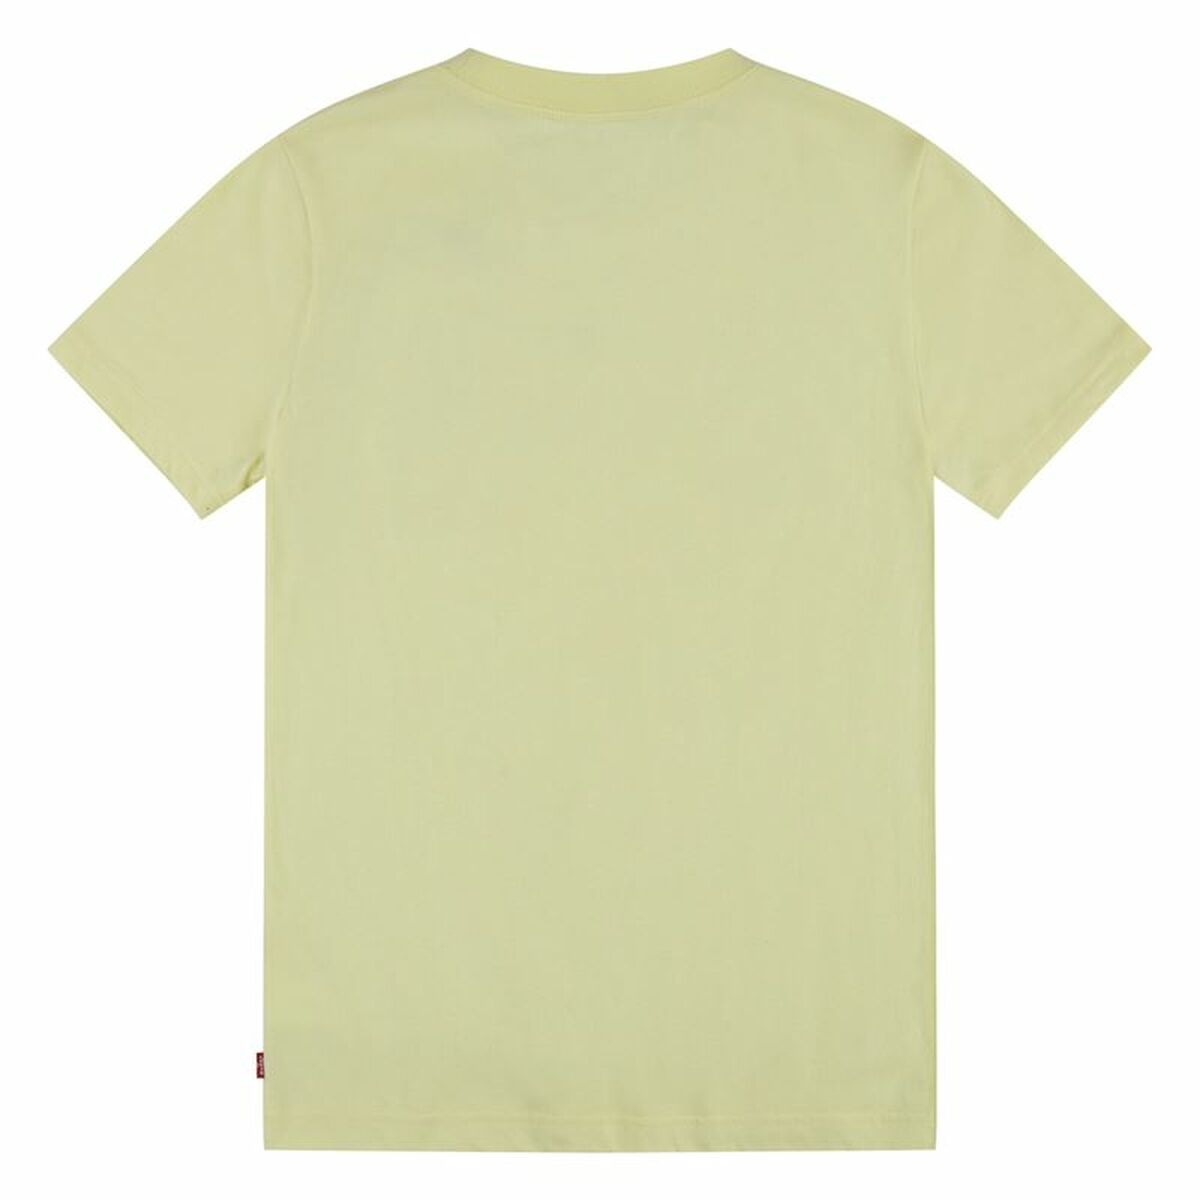 T-shirt Batwing Luminary Levi's 63390 Yellow